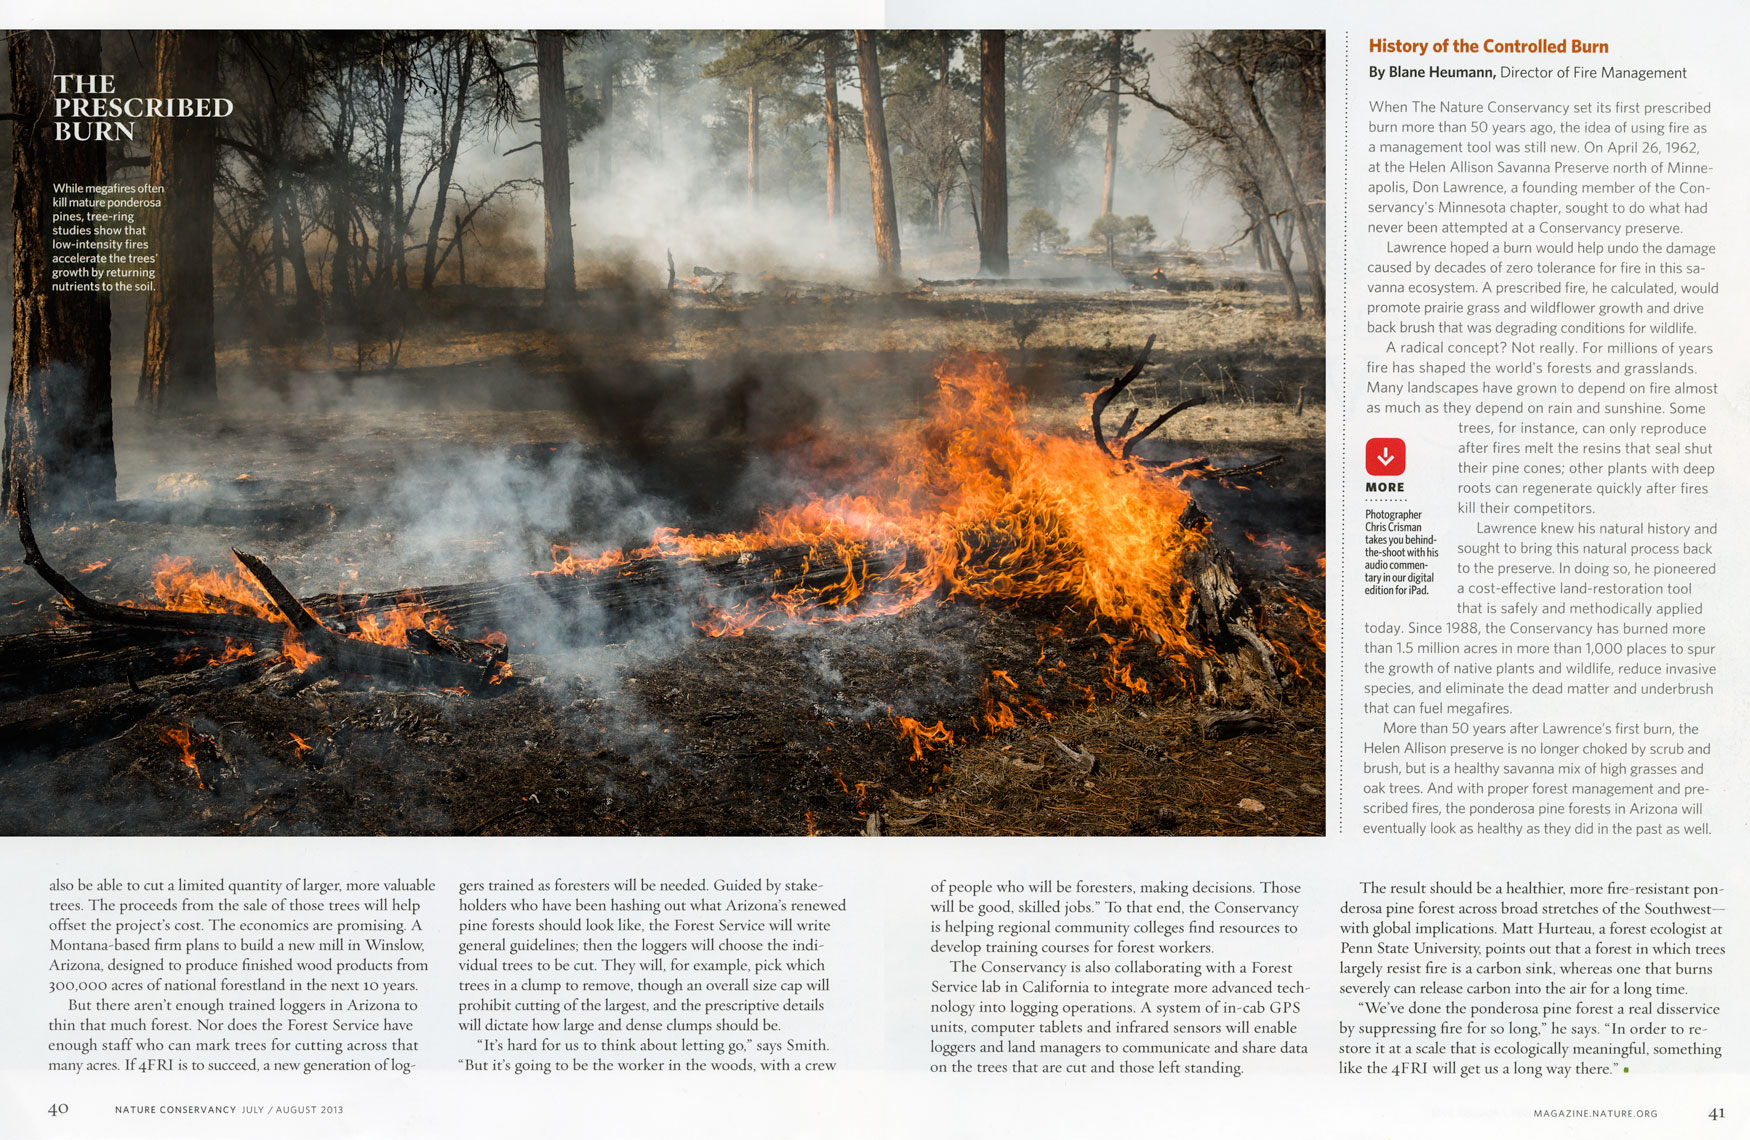 Nature Conservancy: The Prescribed Burn. SPREAD 5